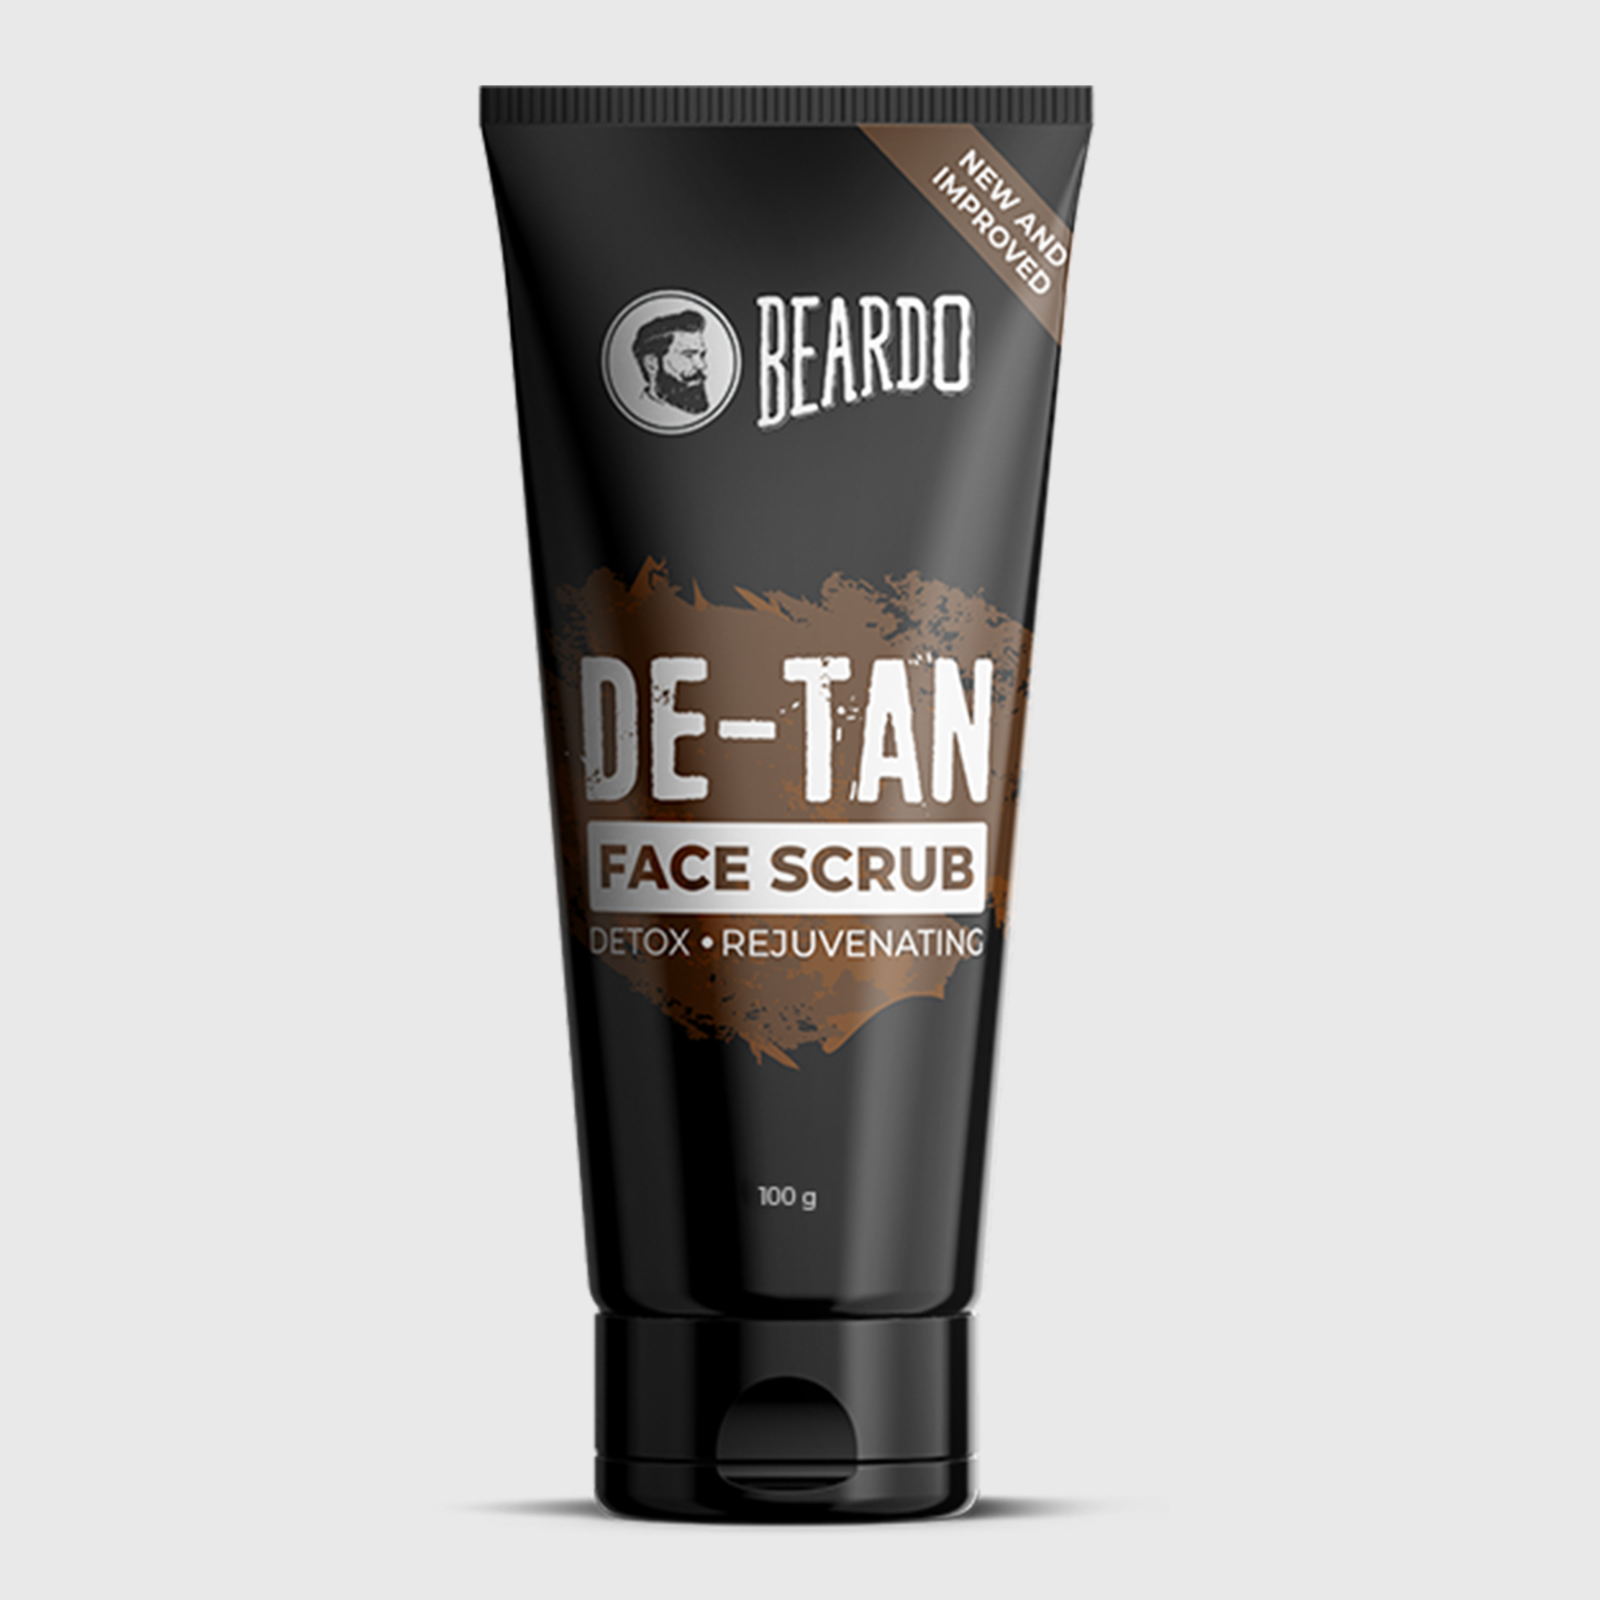 Beardo De-Tan Face Scrub coupon code